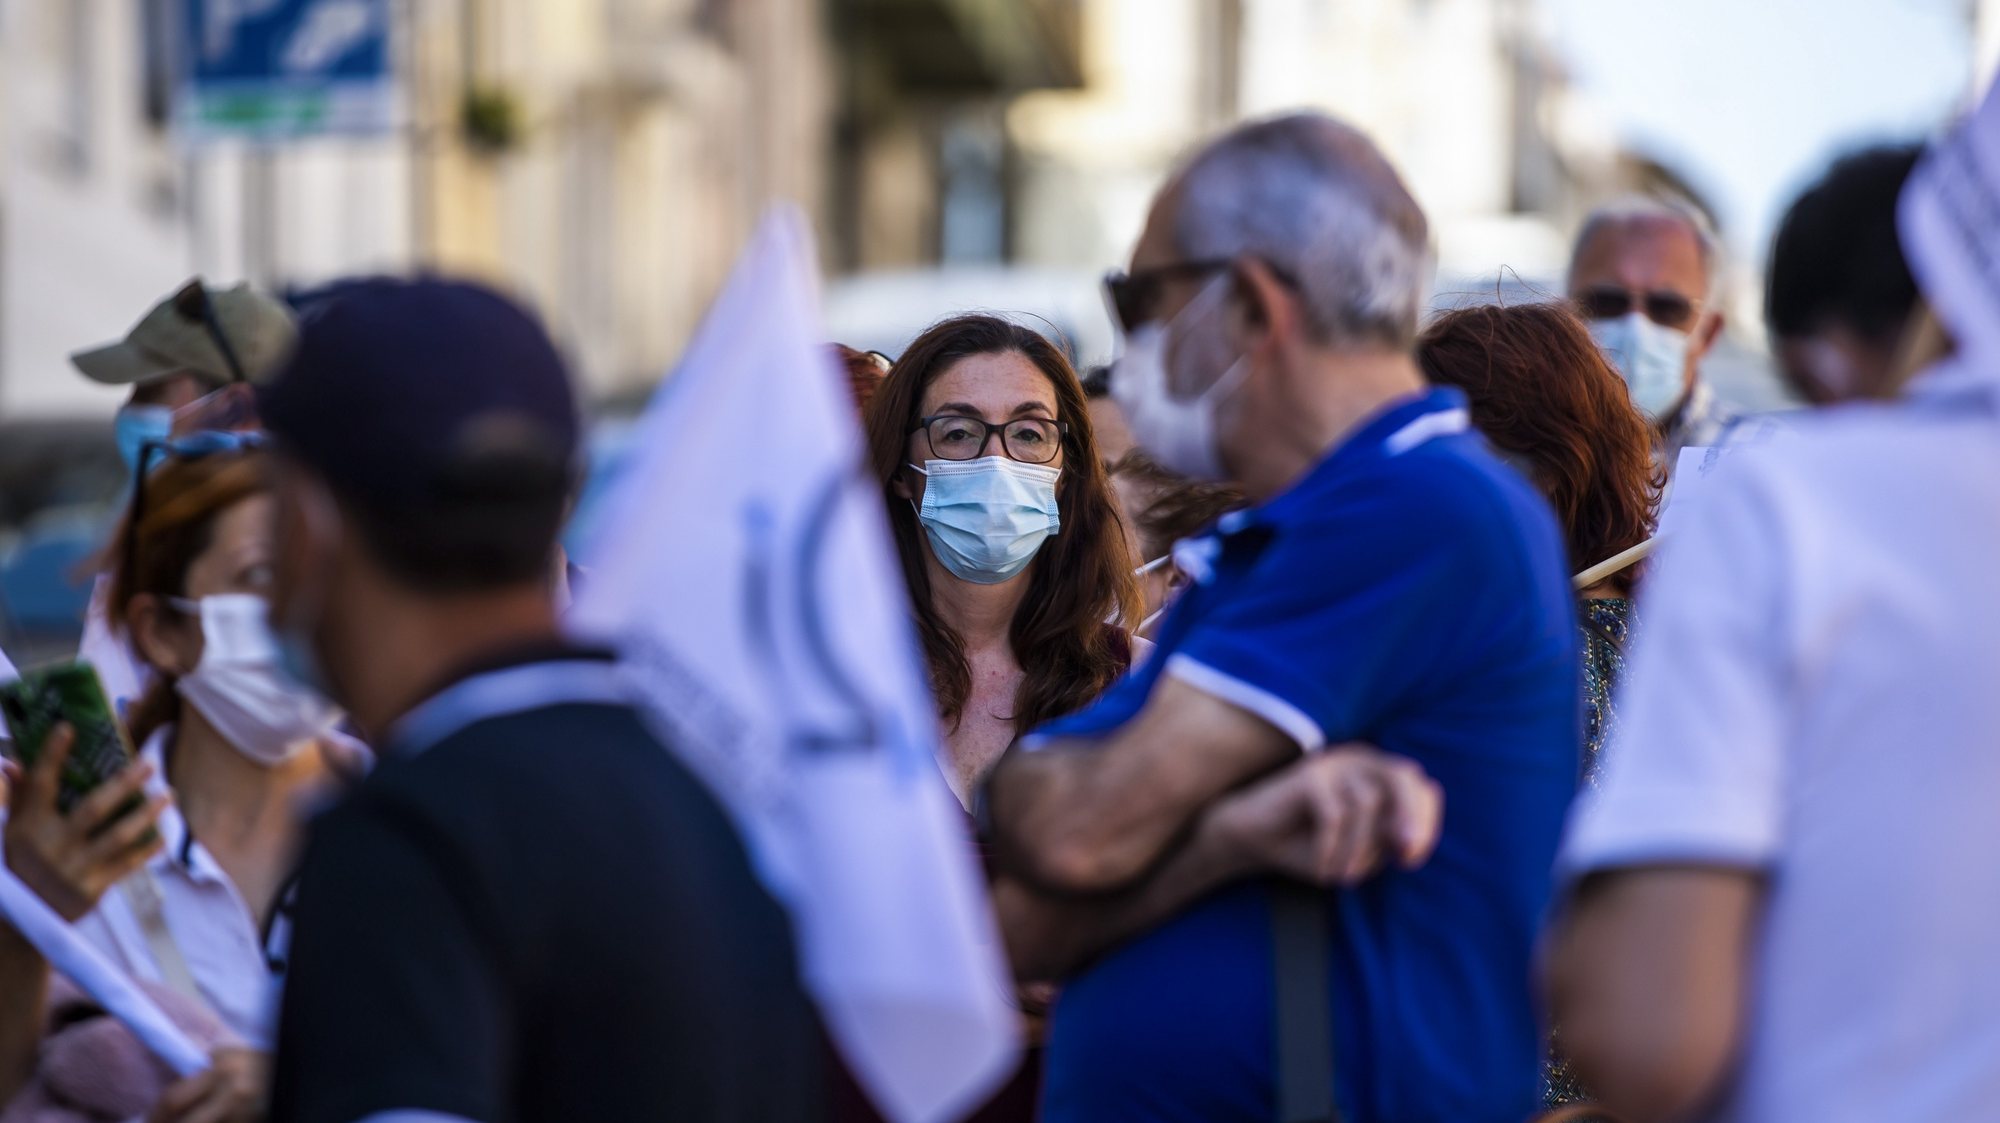 Concentração de ativistas da Frente Sindical da MEO/Altice convocada pela Frente Sindical com apoio da CGTP, em protesto pelos despedimento de 300 trabalhadores da MEO/Altice, nas imediações da Residência Oficial do primeiro-ministro, em Lisboa, 16 de julho de 2021. JOSÉ SENA GOULÃO/LUSA